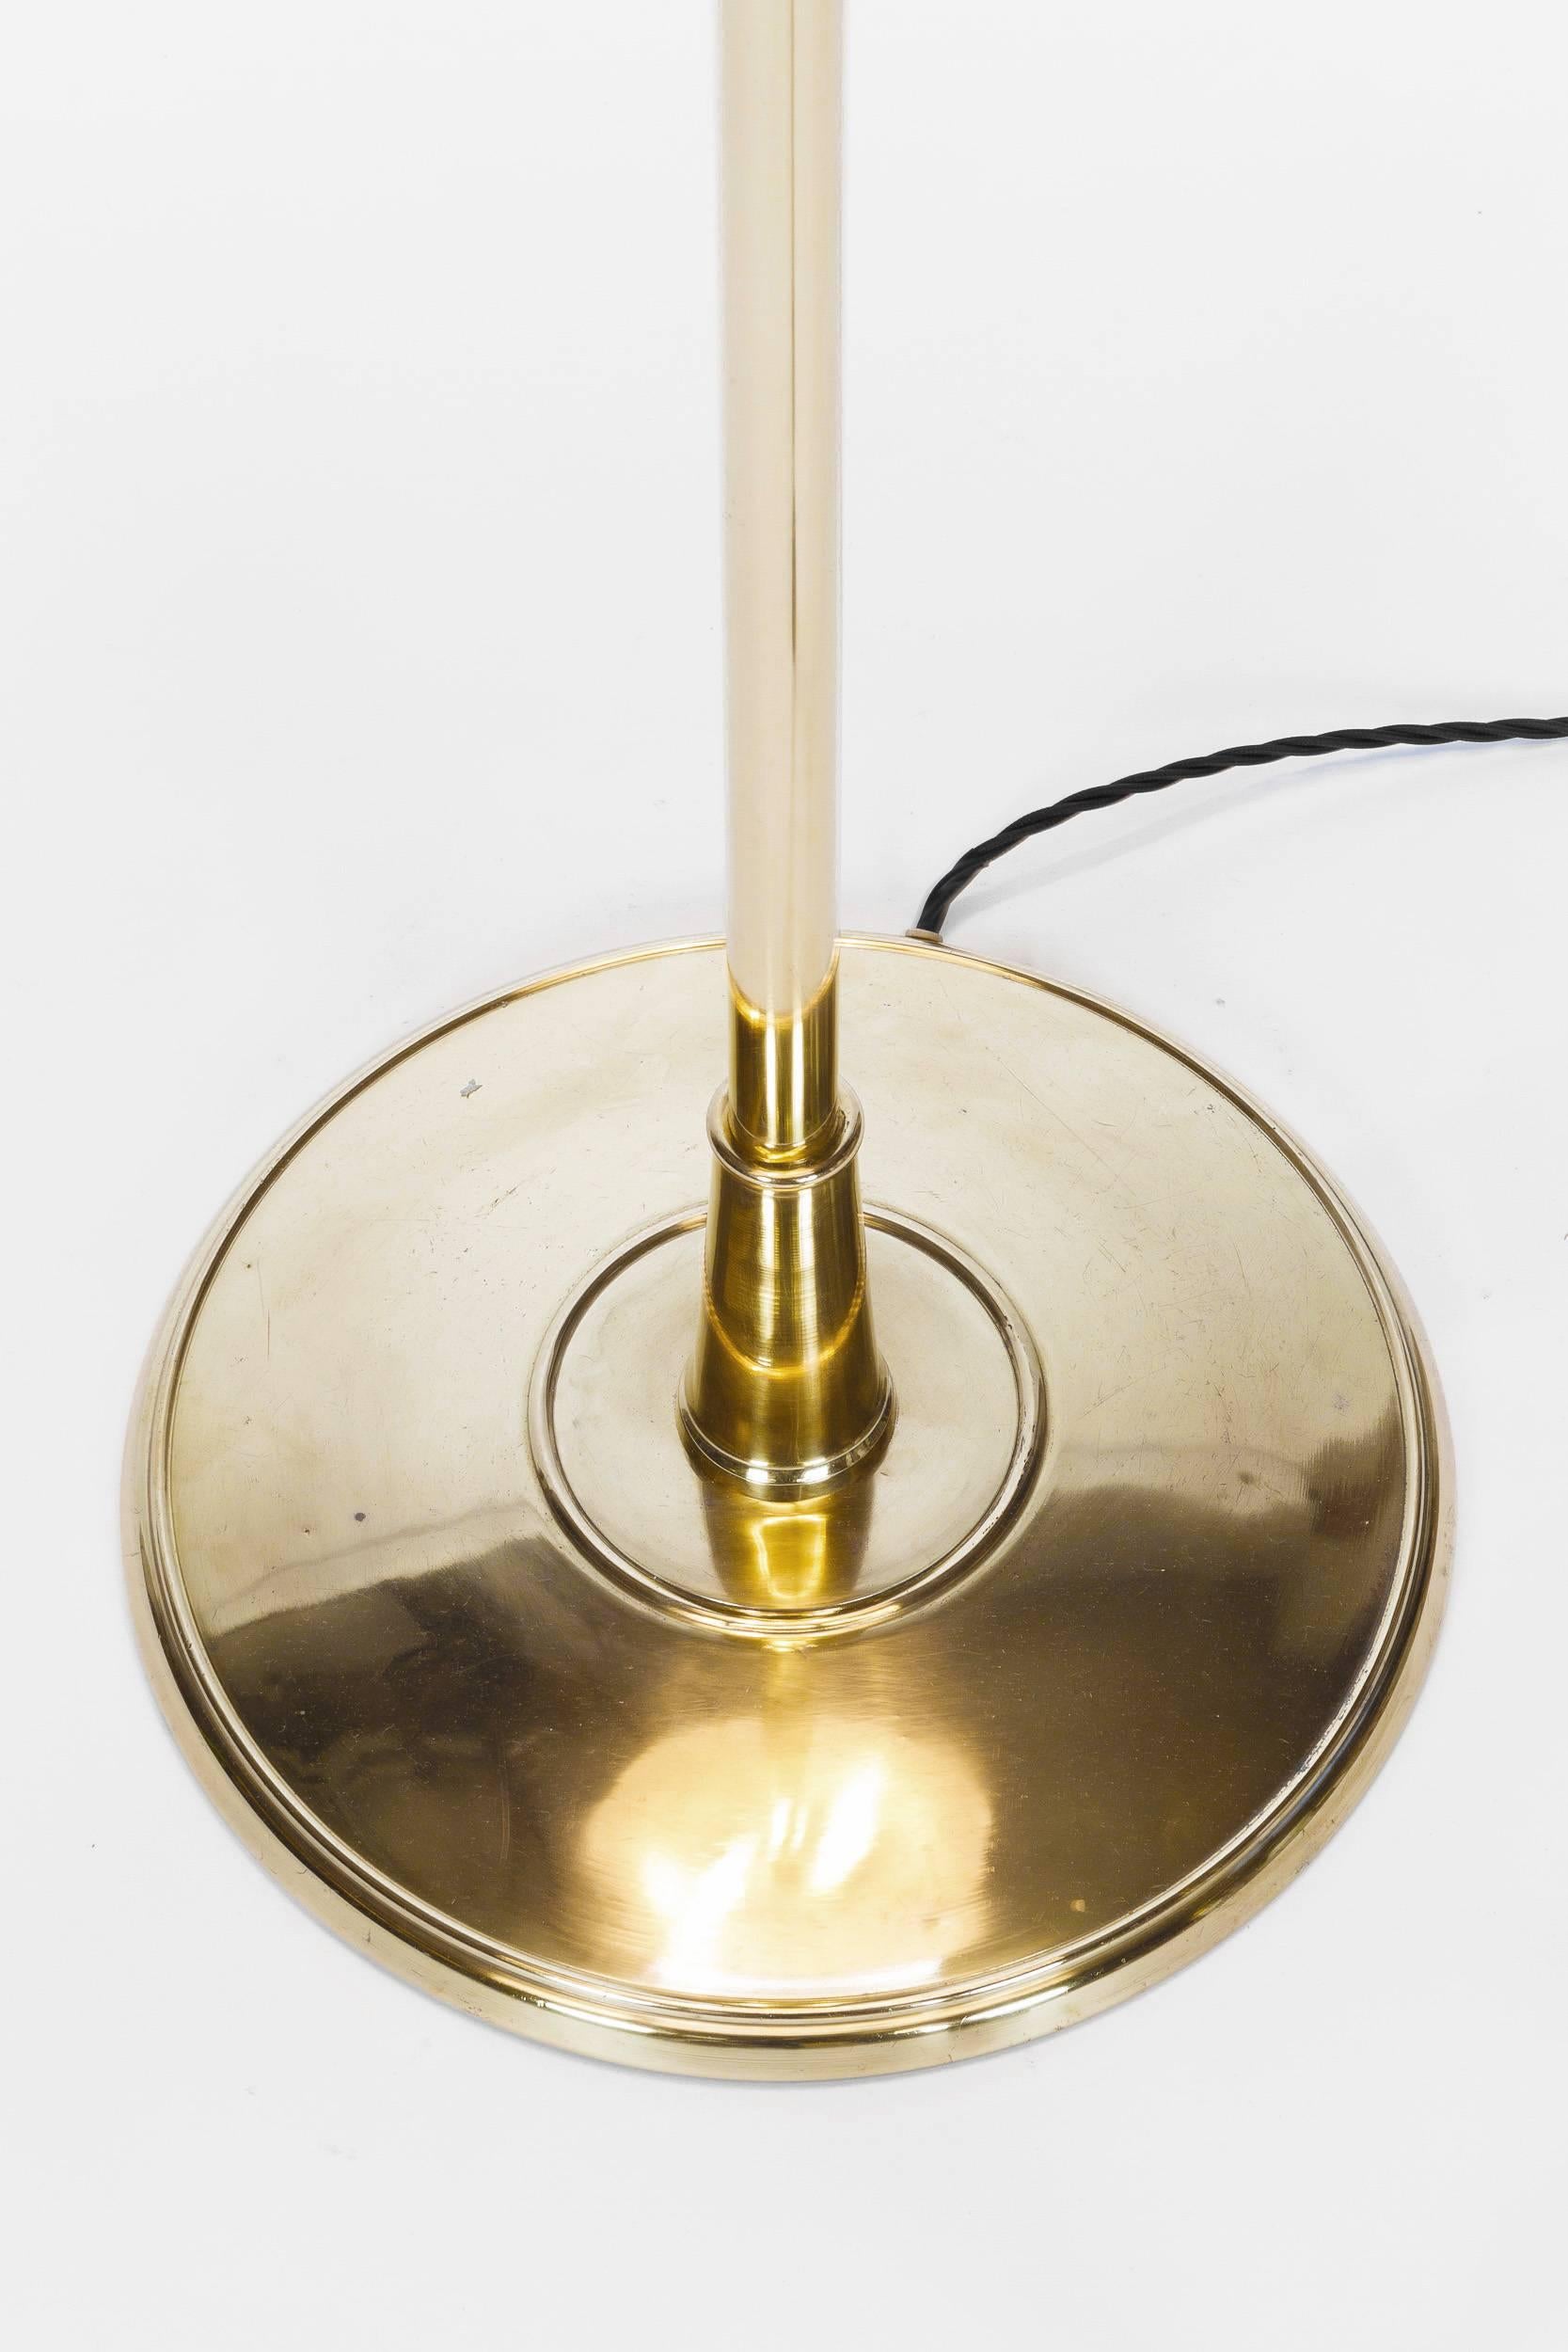 Swiss Floor Lampe Eberth Zürich Model 454 Hide Brass, 1940s 4